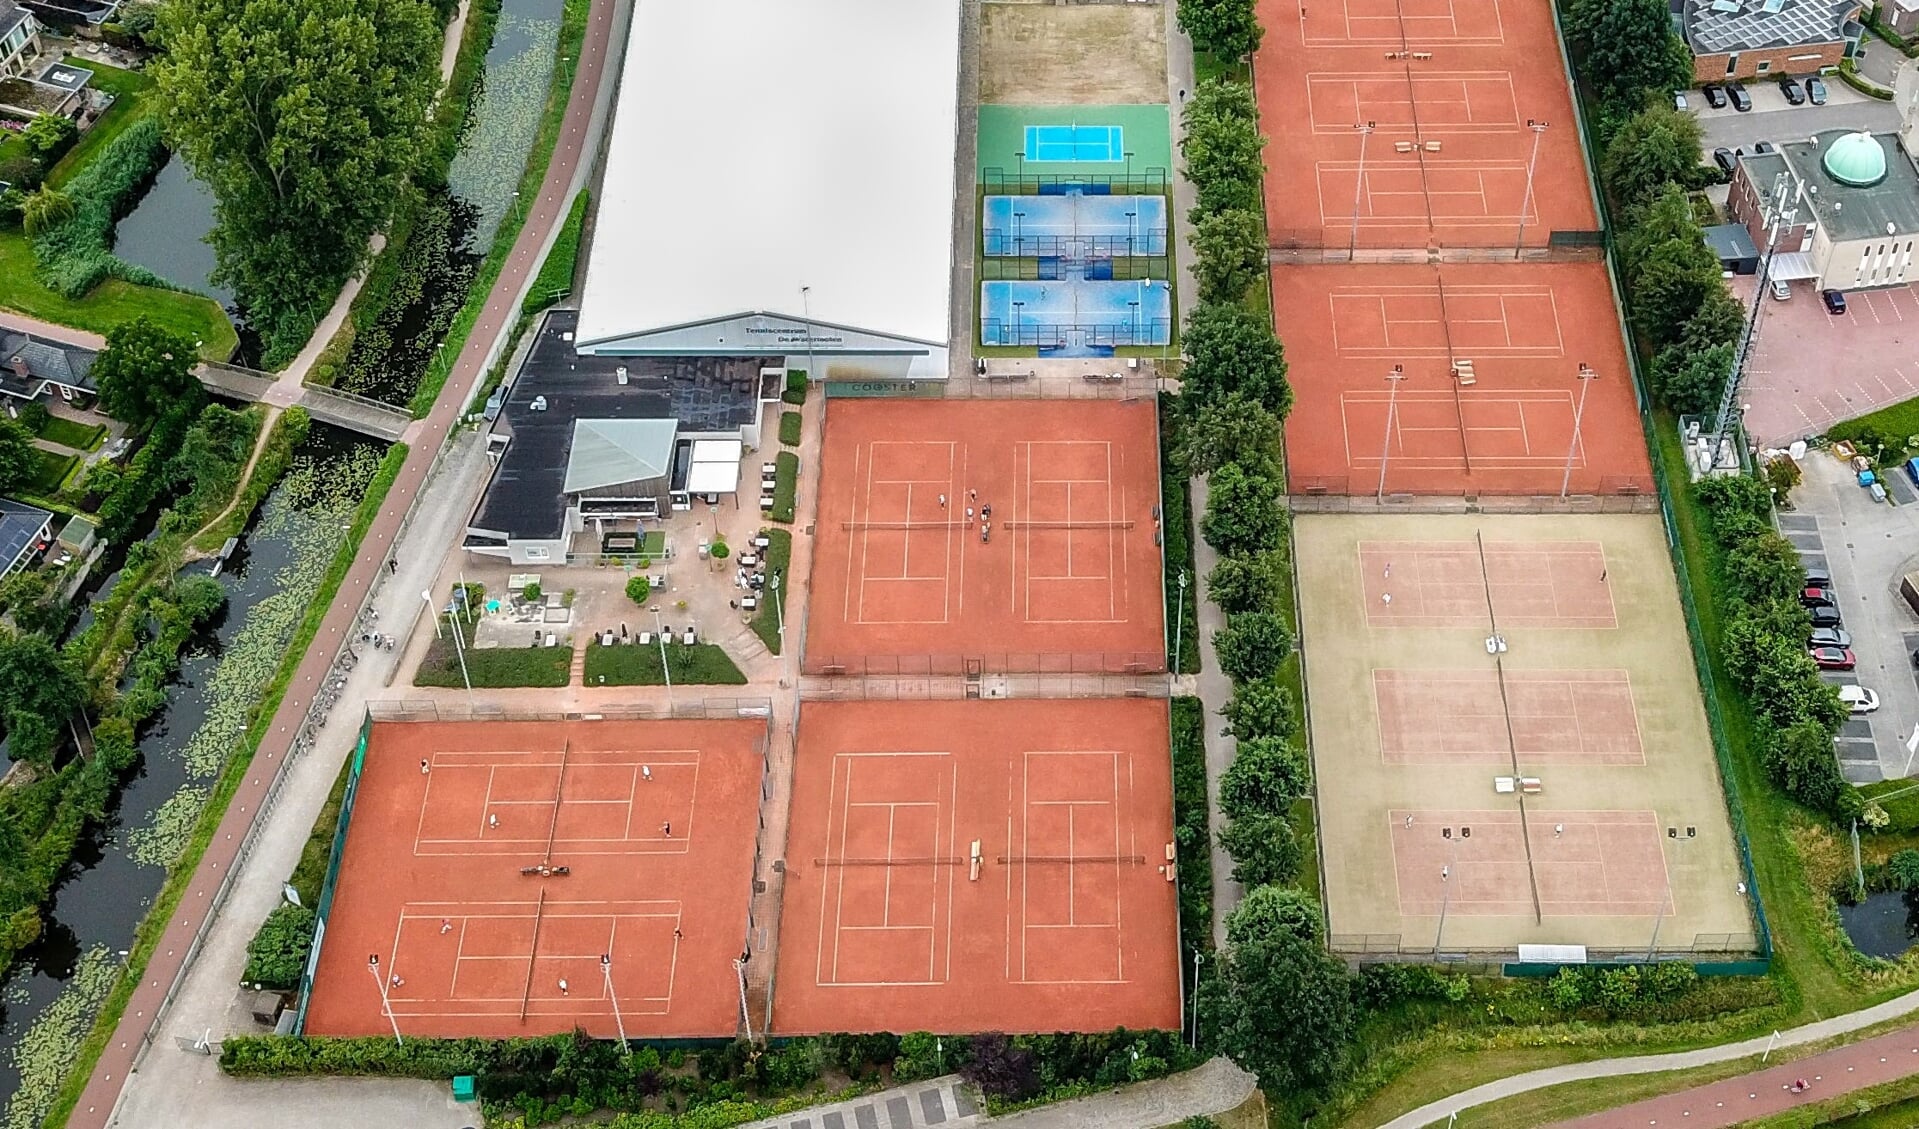 Overzichtsfoto van tennispark De Watermolen.